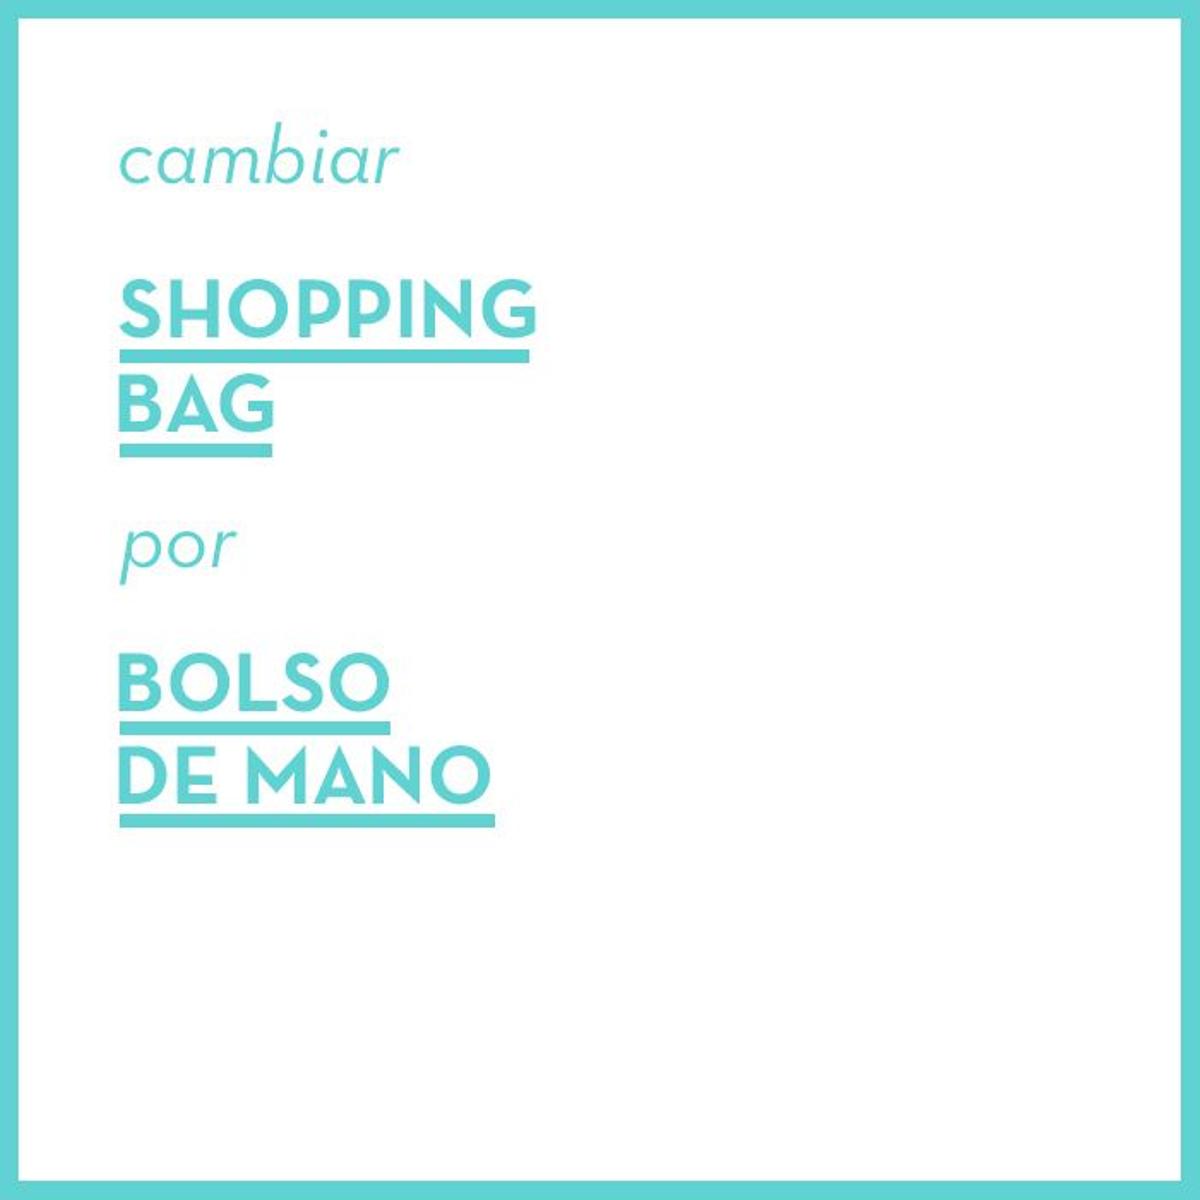 Shopping bag - Bolso de mano